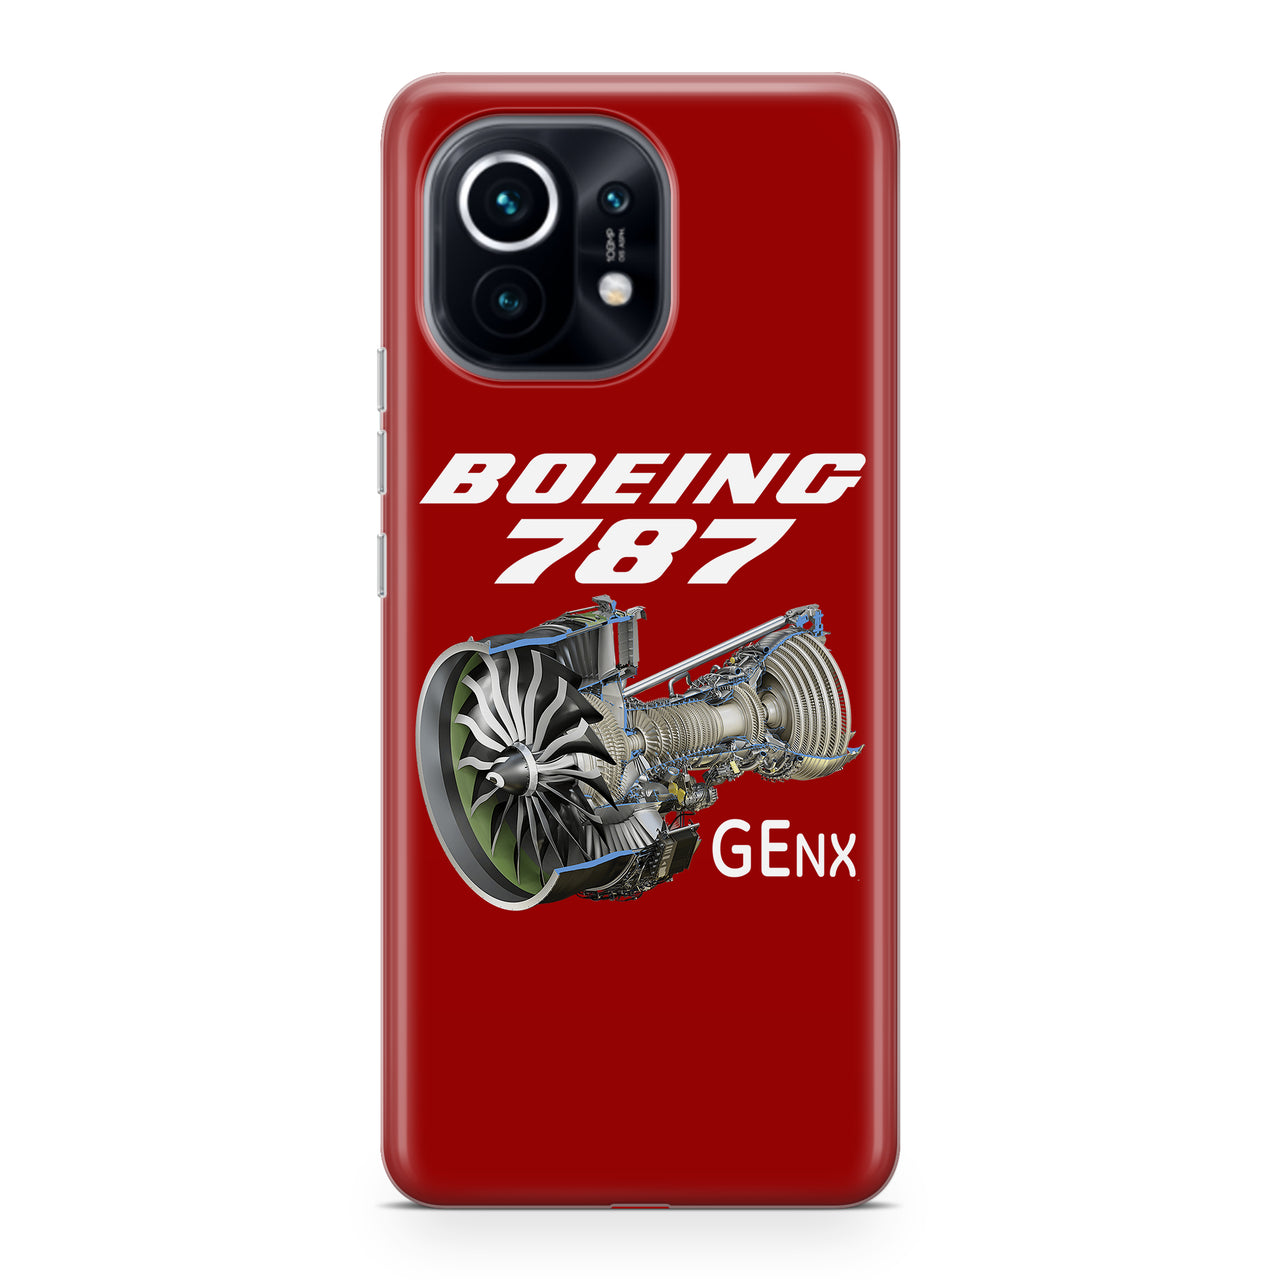 Boeing 787 & GENX Engine Designed Xiaomi Cases